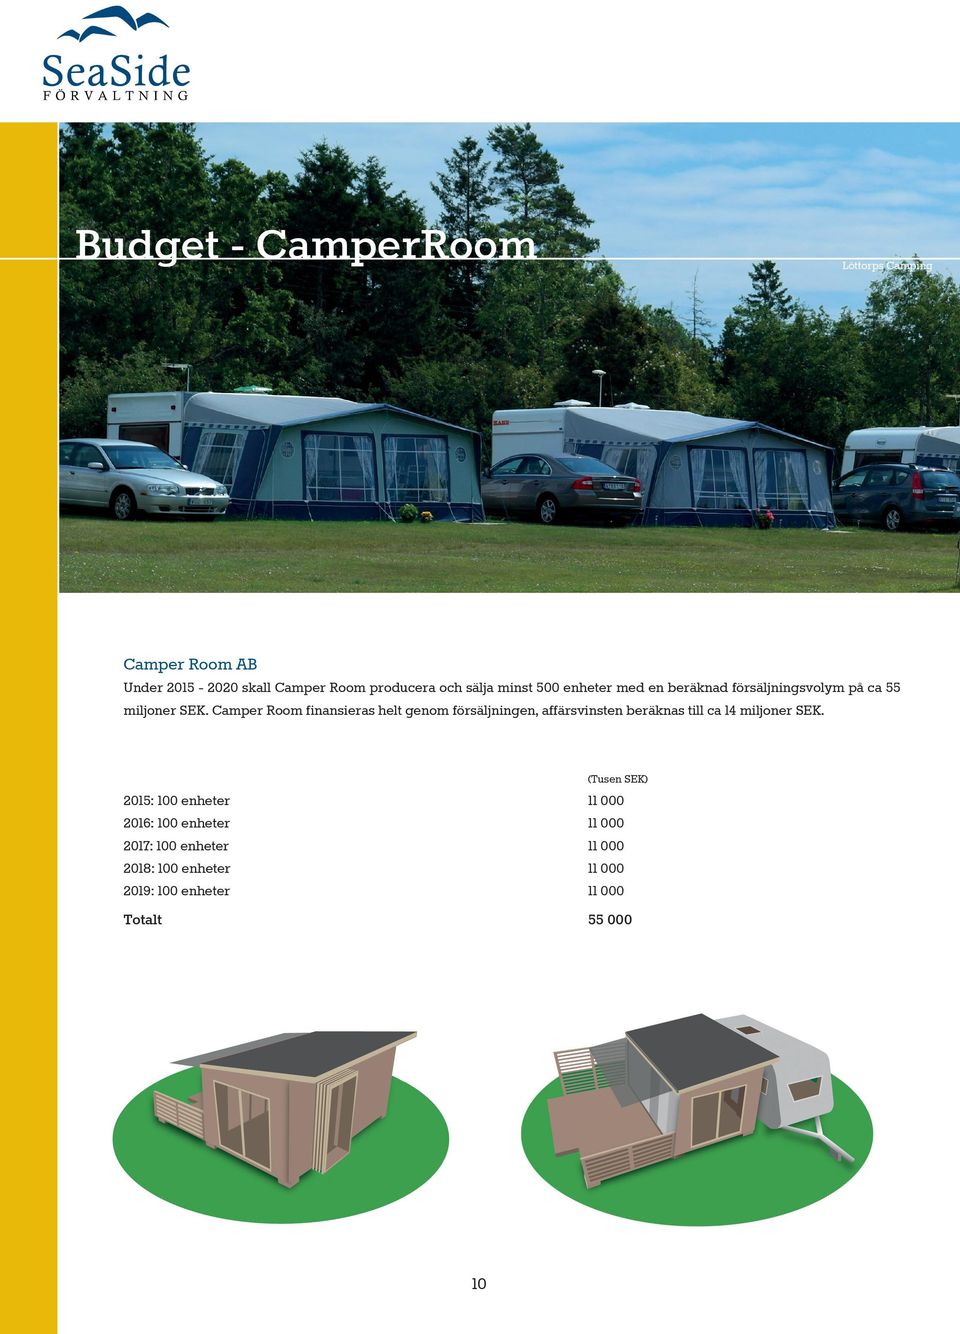 Camper Room finansieras helt genom försäljningen, affärsvinsten beräknas till ca 14 miljoner SEK.